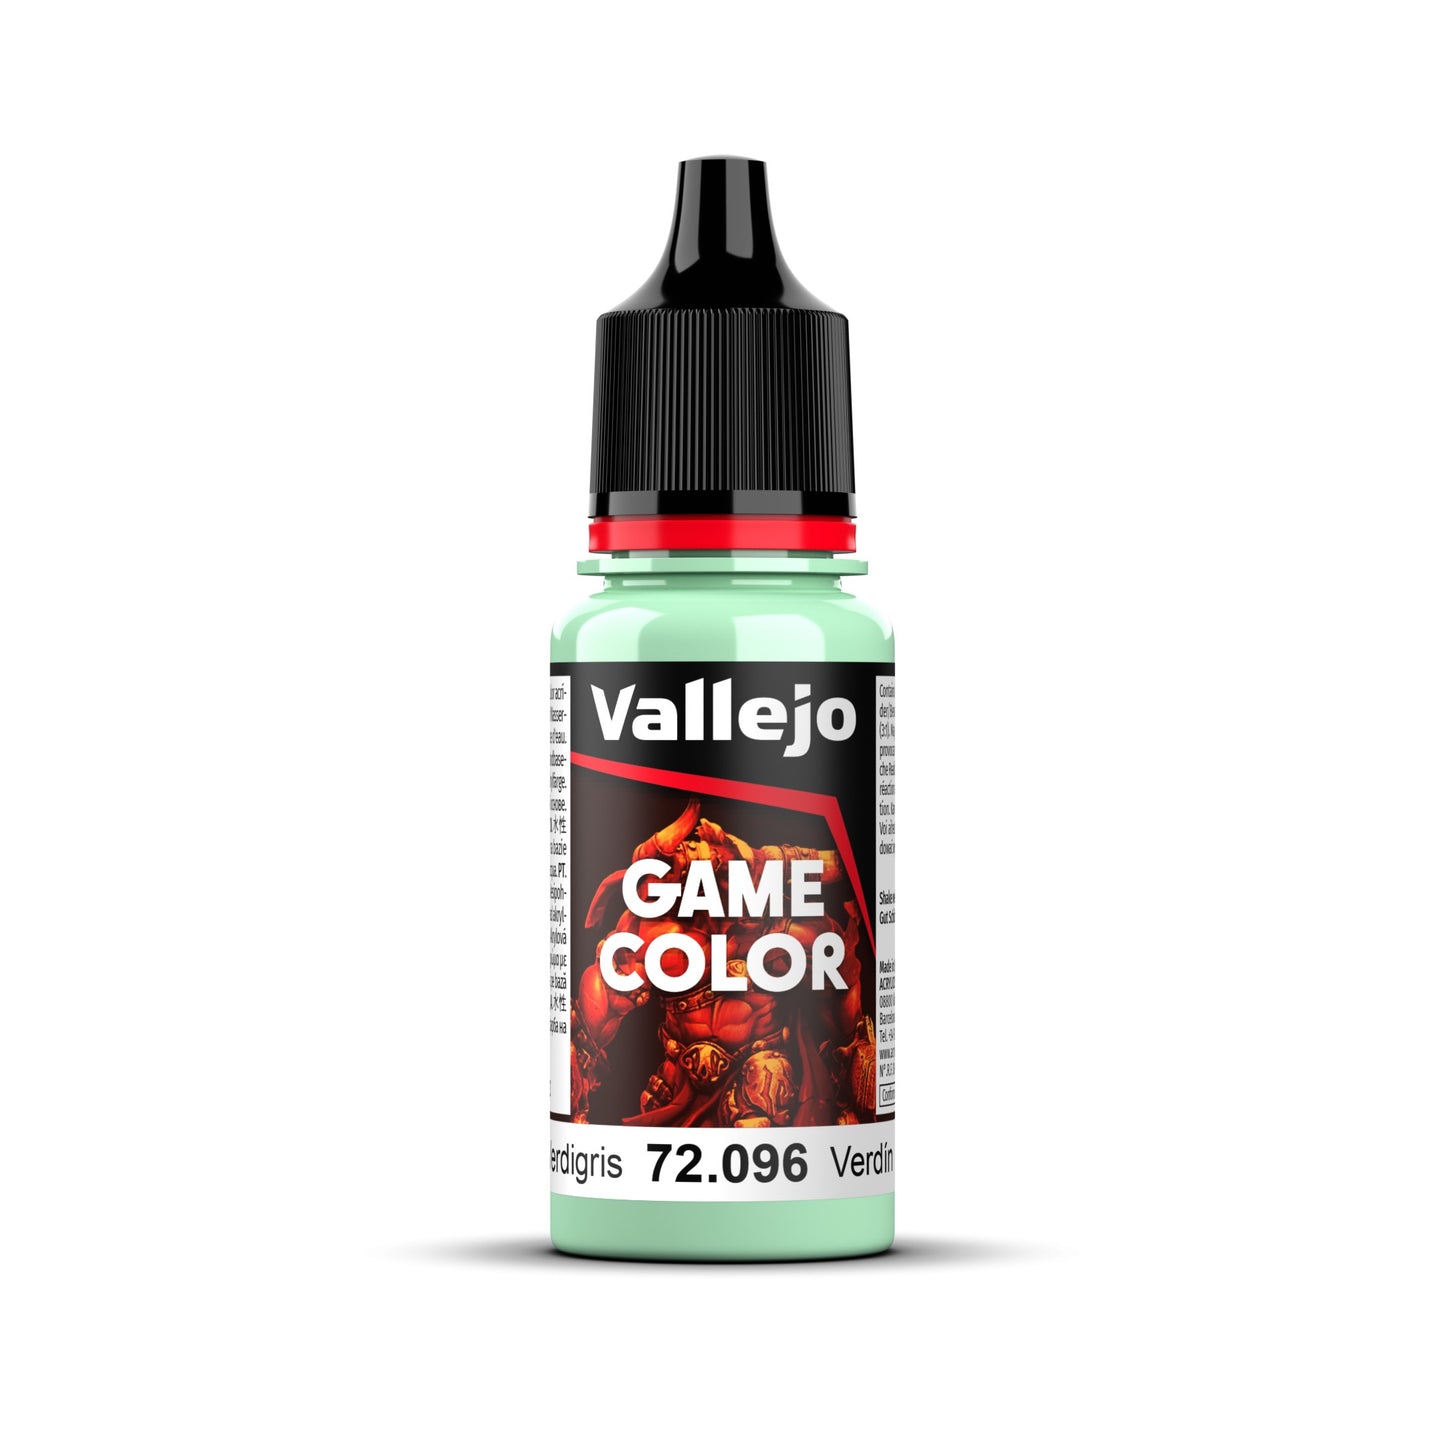 Vallejo Game Colour - Verdigris 18ml